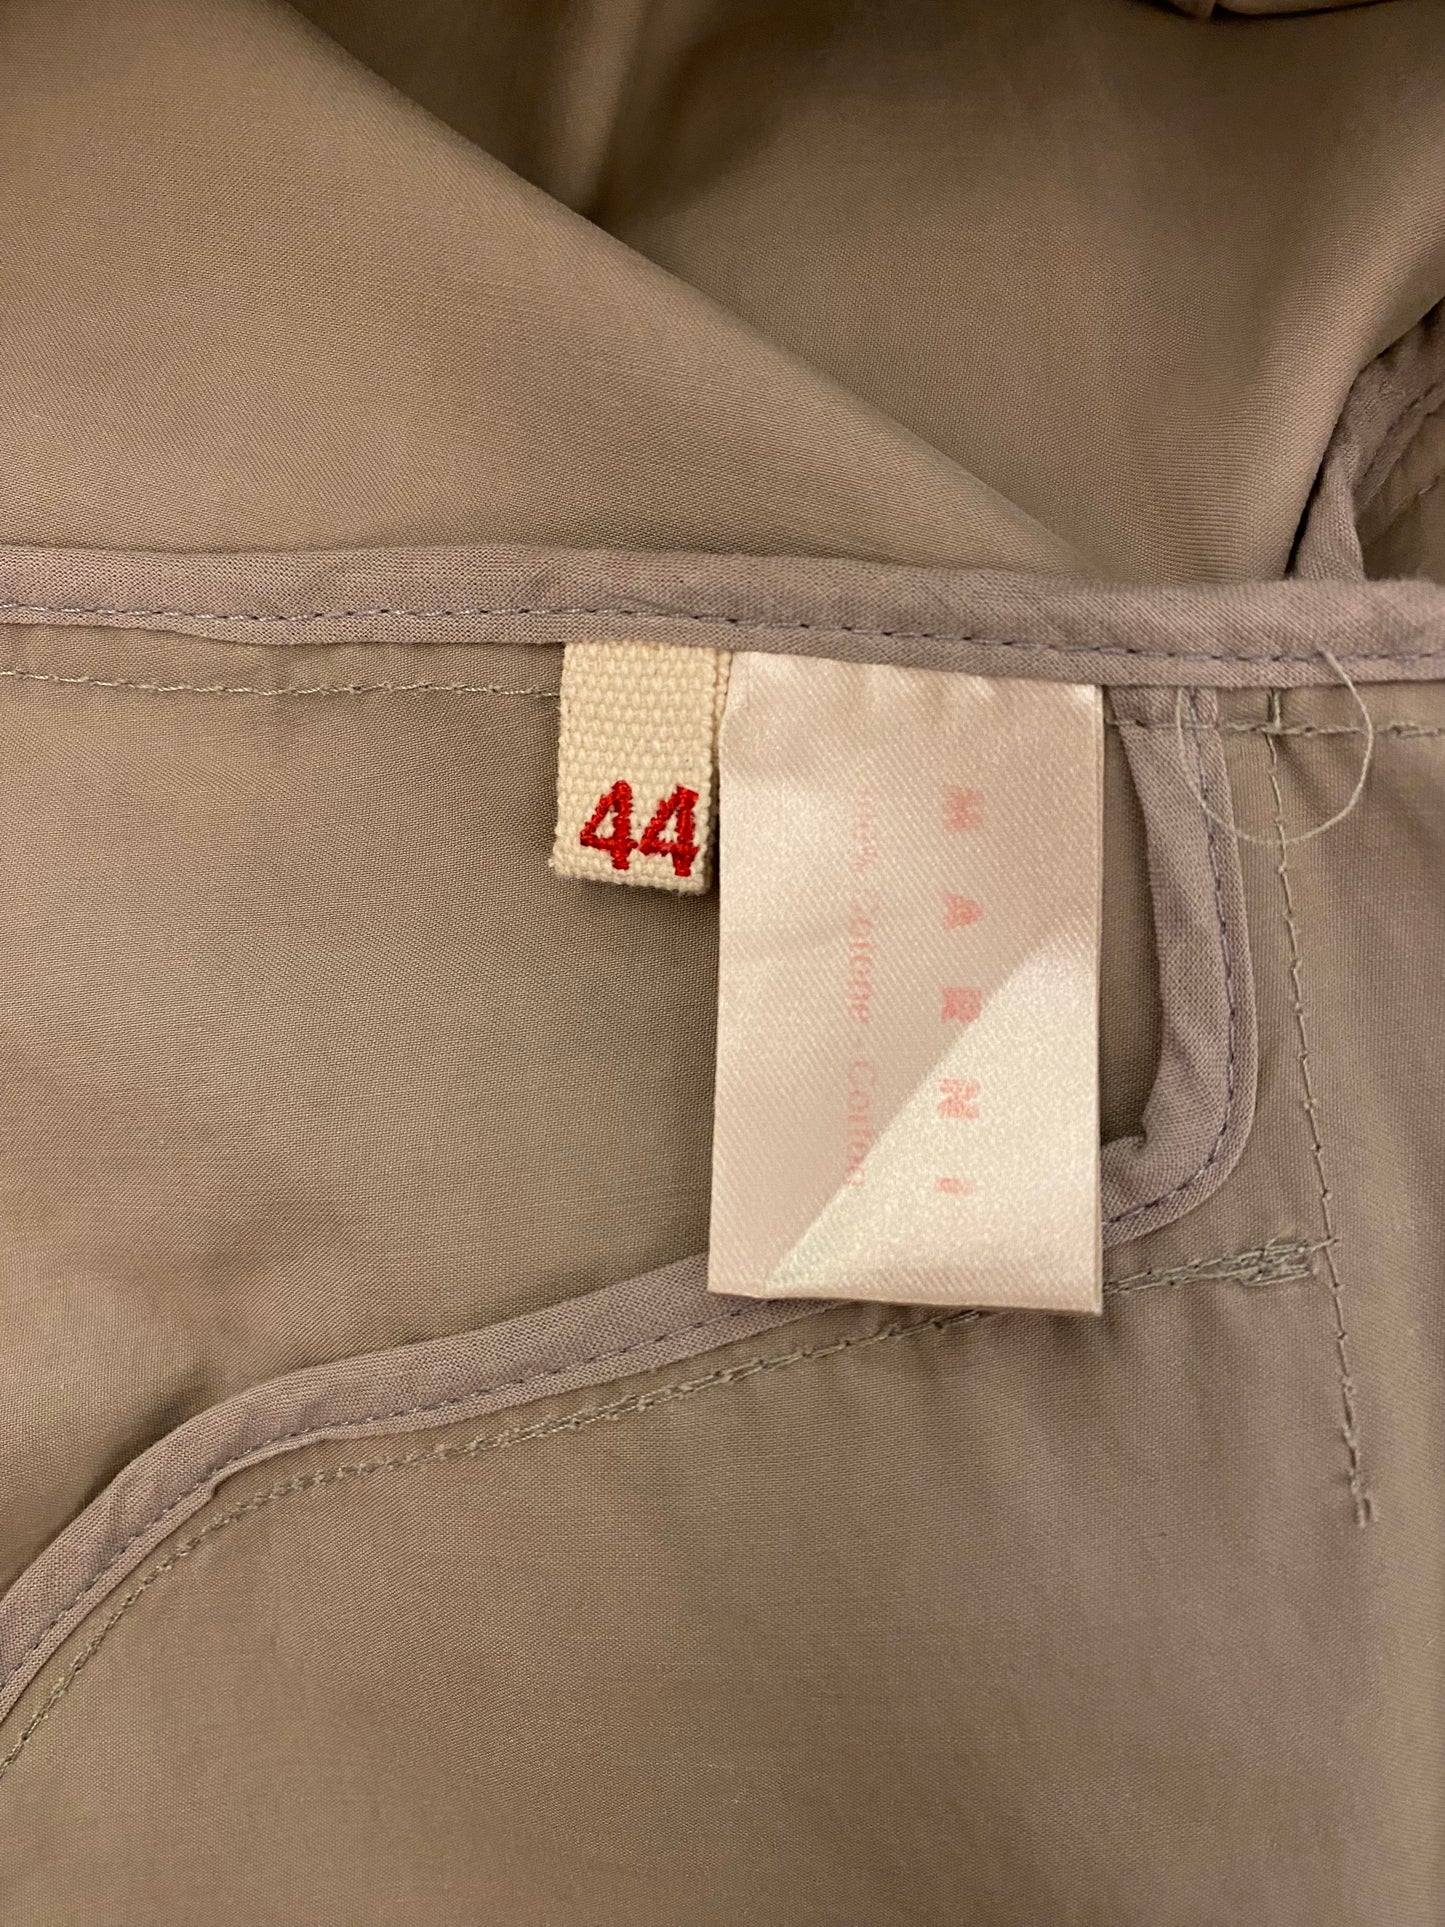 MARNI Cotton Jacket Size It 44 Eu 38/40